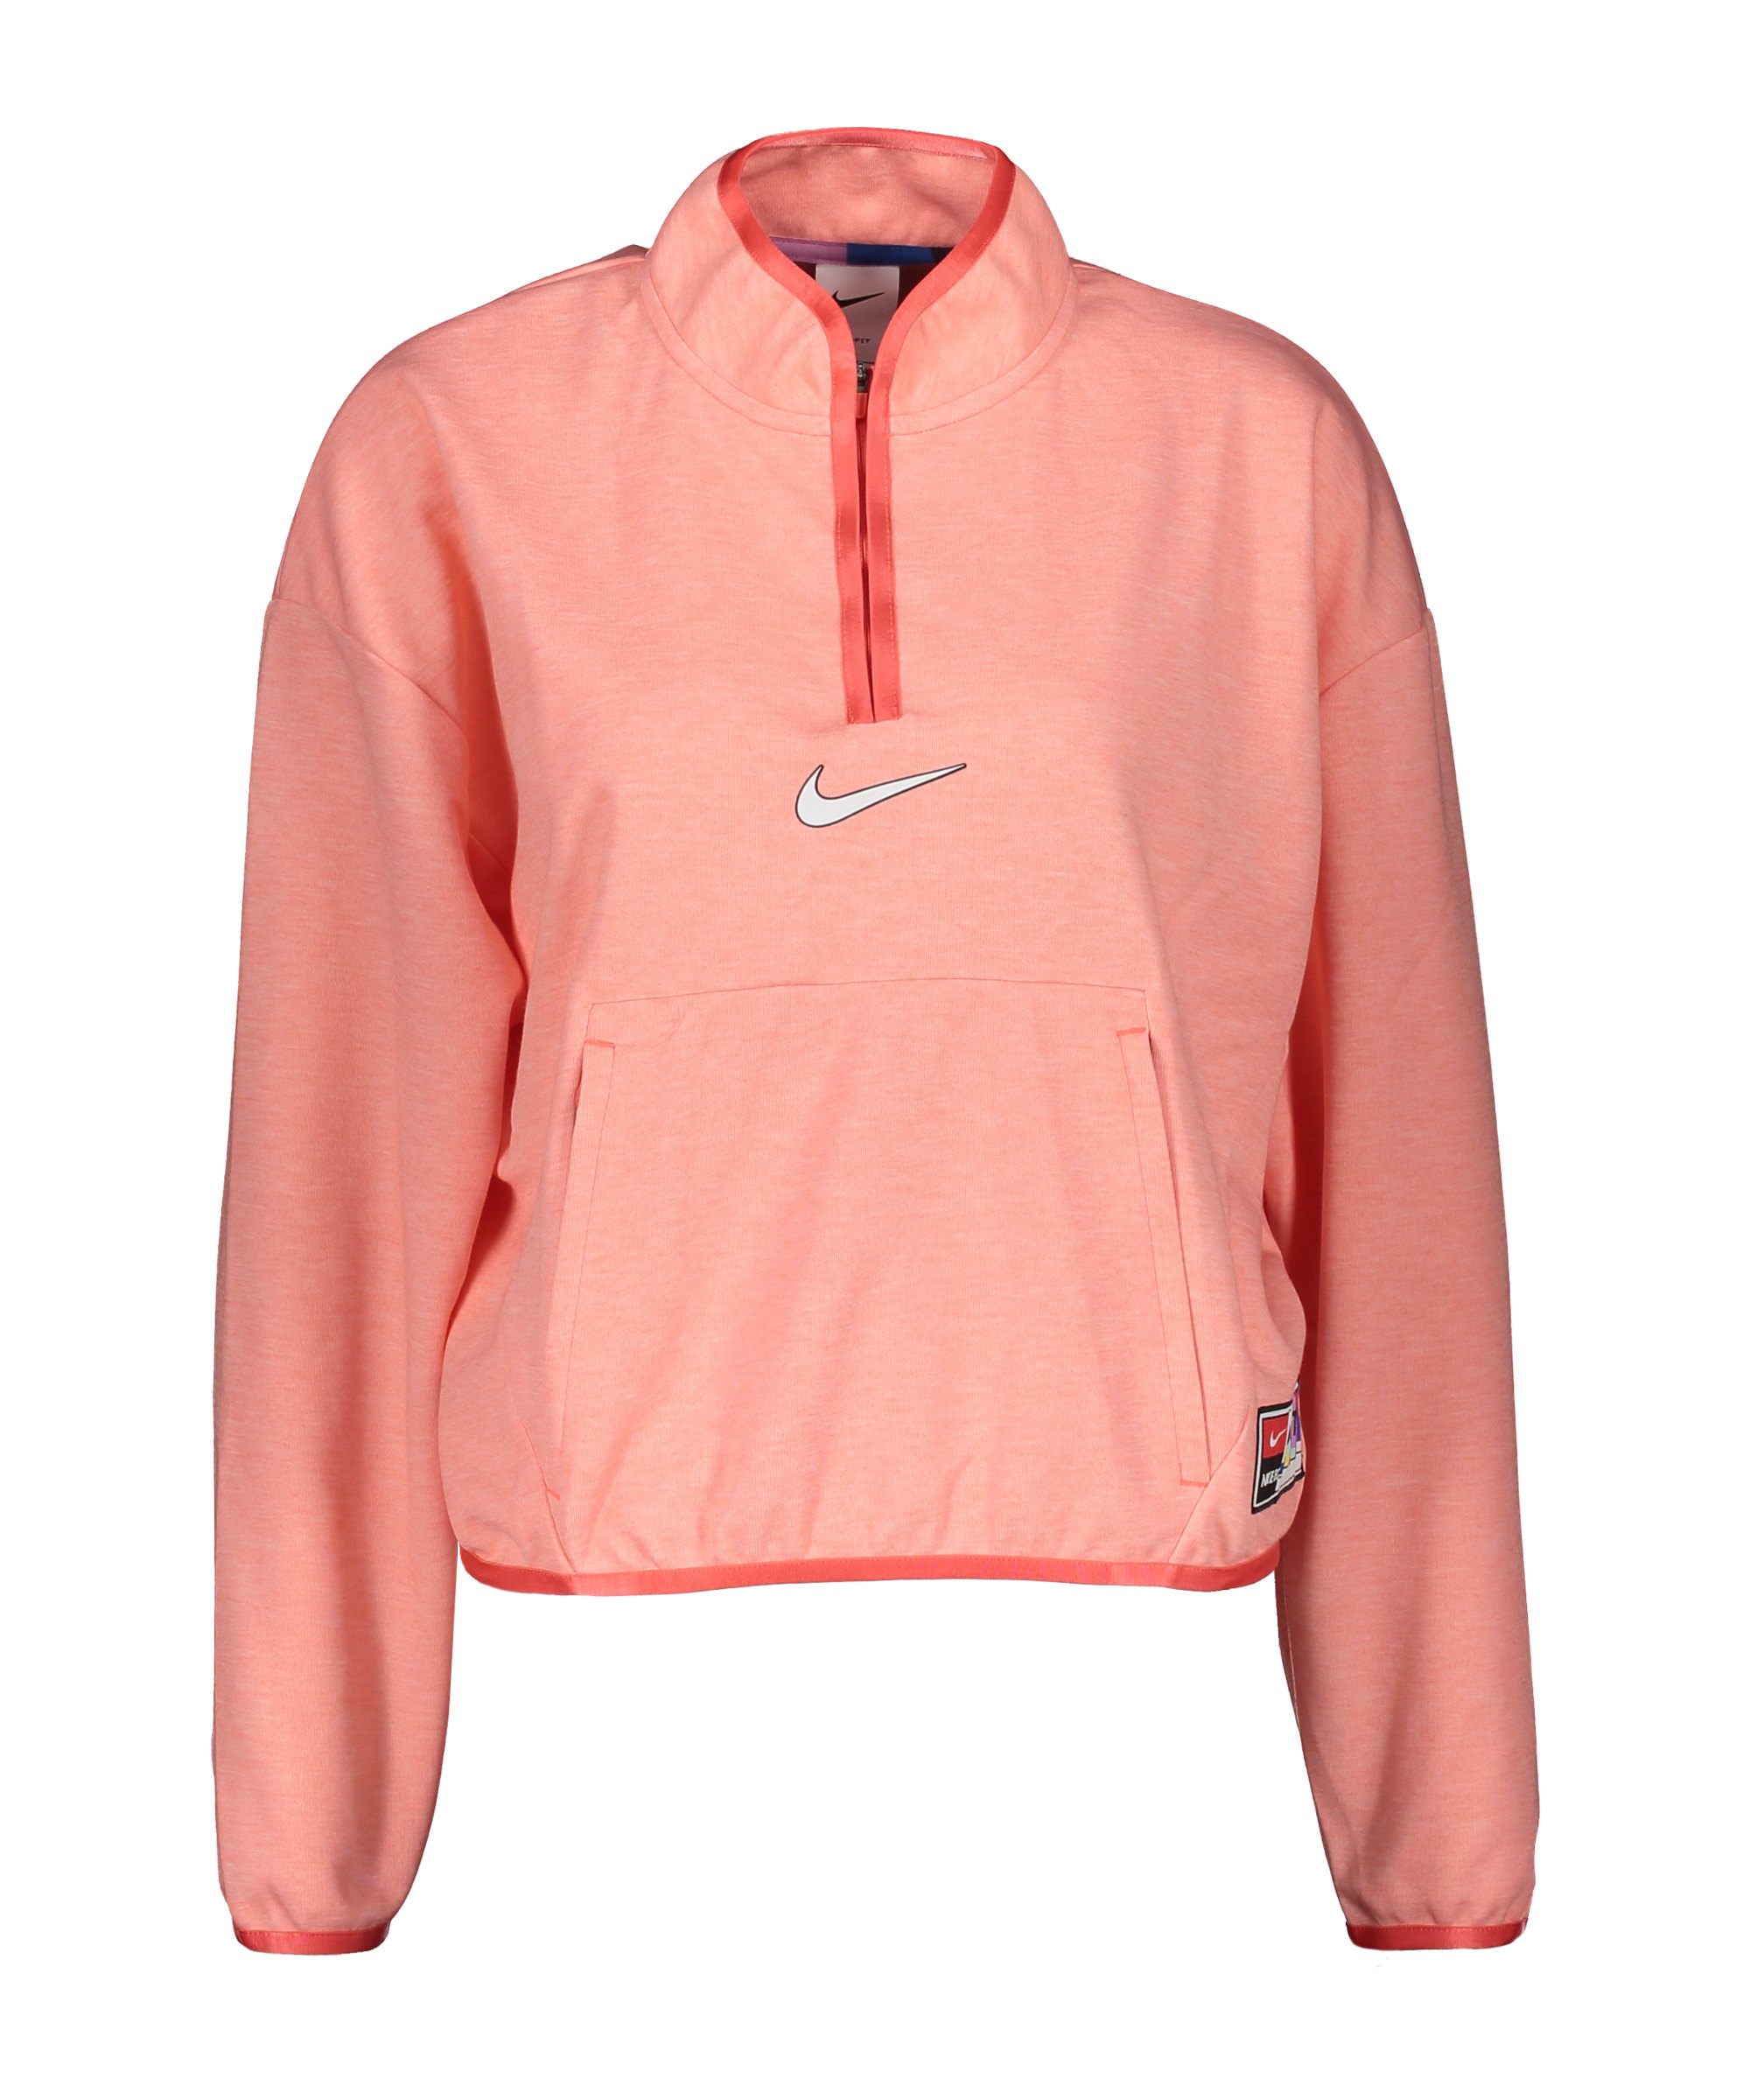 Nike F.C. Midlayer Jacke Damen Orange F858 - orange